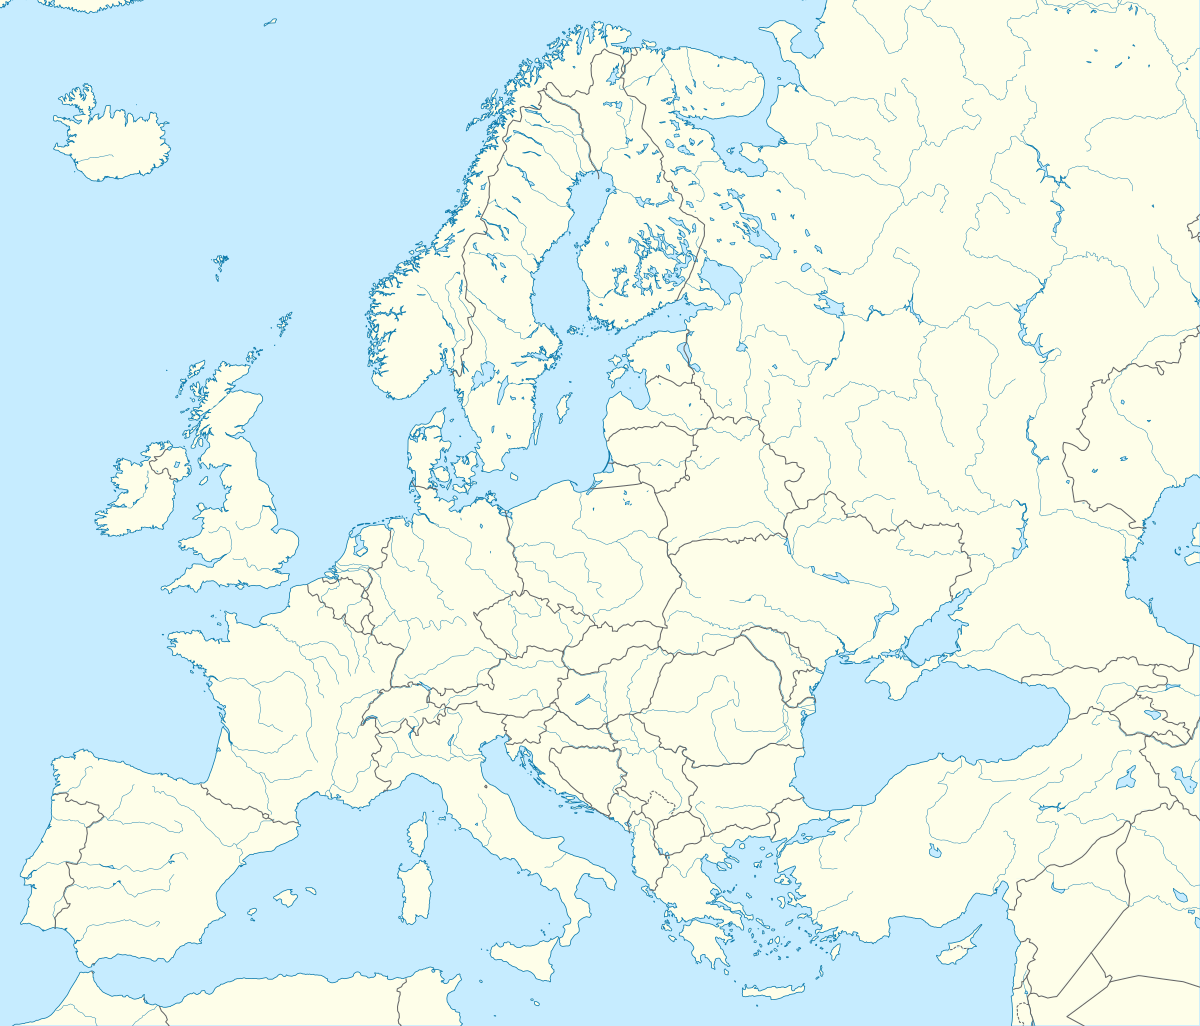 (Voir situation sur carte : Europe)